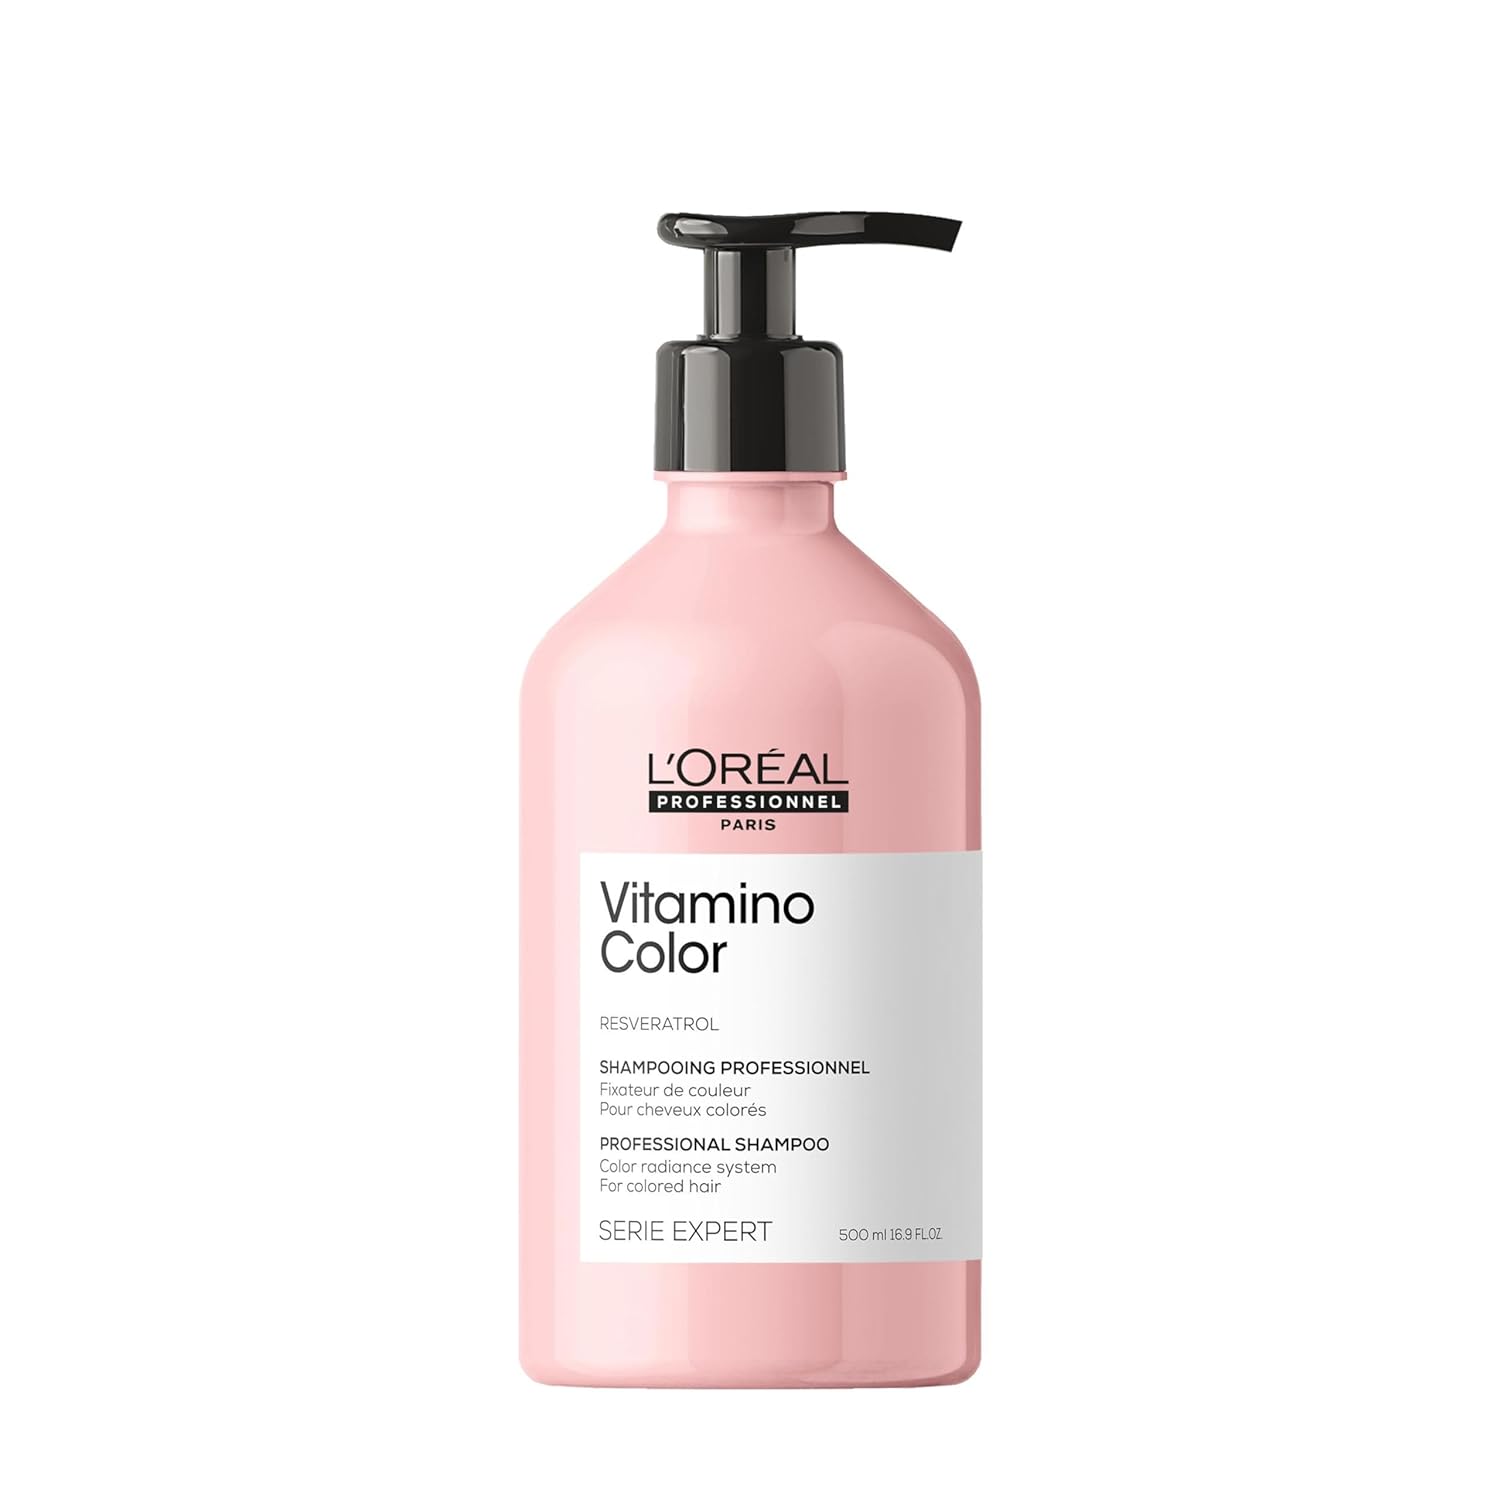 L'Oreal Professionnel Vitamino Color Shampoo 